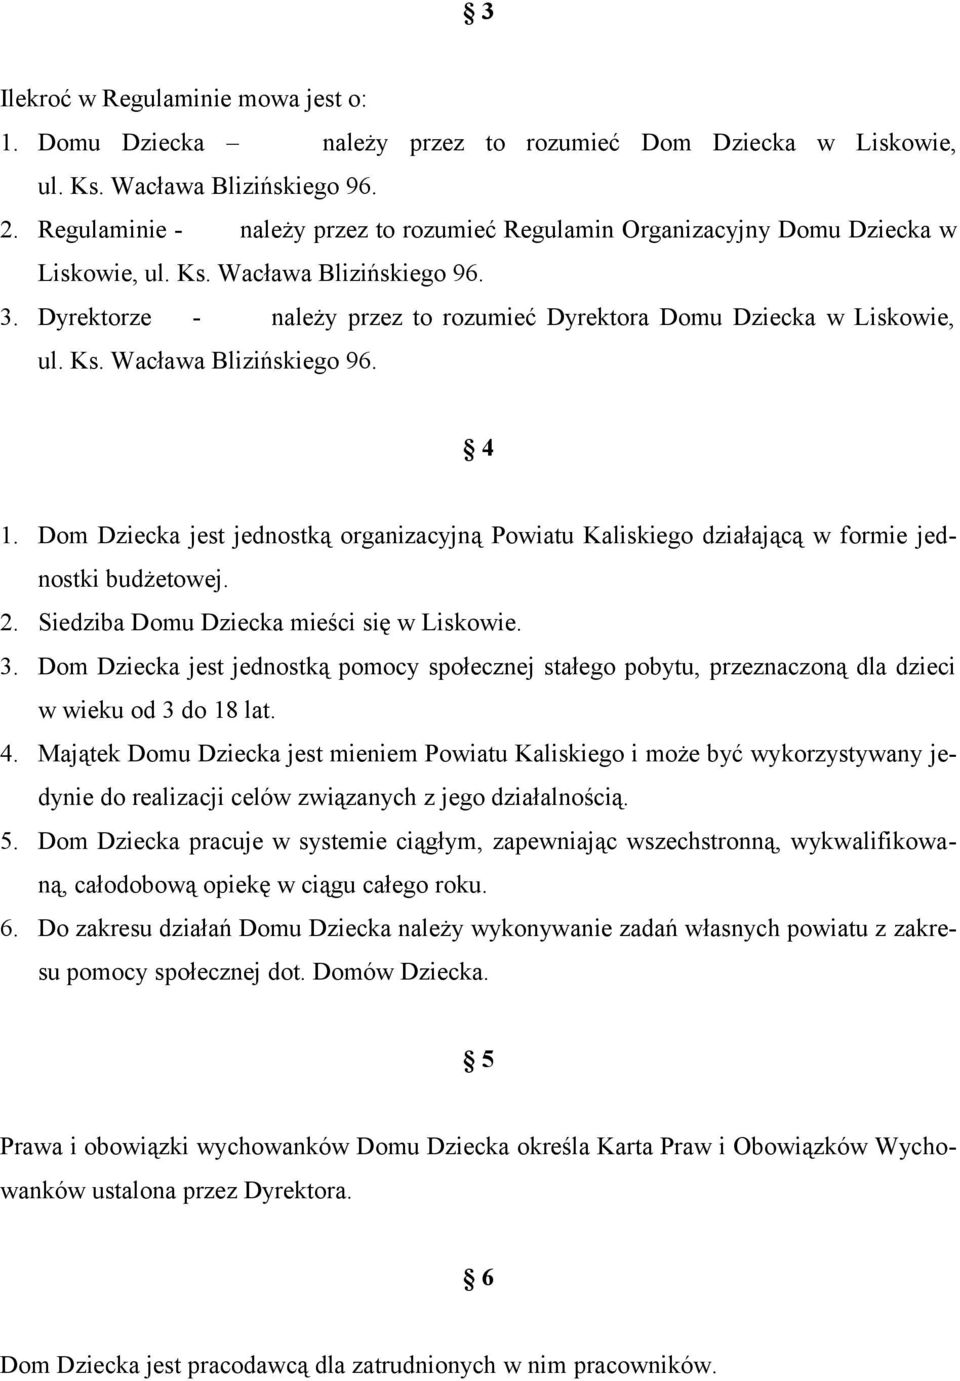 Ks. Wacława Blizińskiego 96. 4 1. Dom Dziecka jest jednostką organizacyjną Powiatu Kaliskiego działającą w formie jednostki budżetowej. 2. Siedziba Domu Dziecka mieści się w Liskowie. 3.